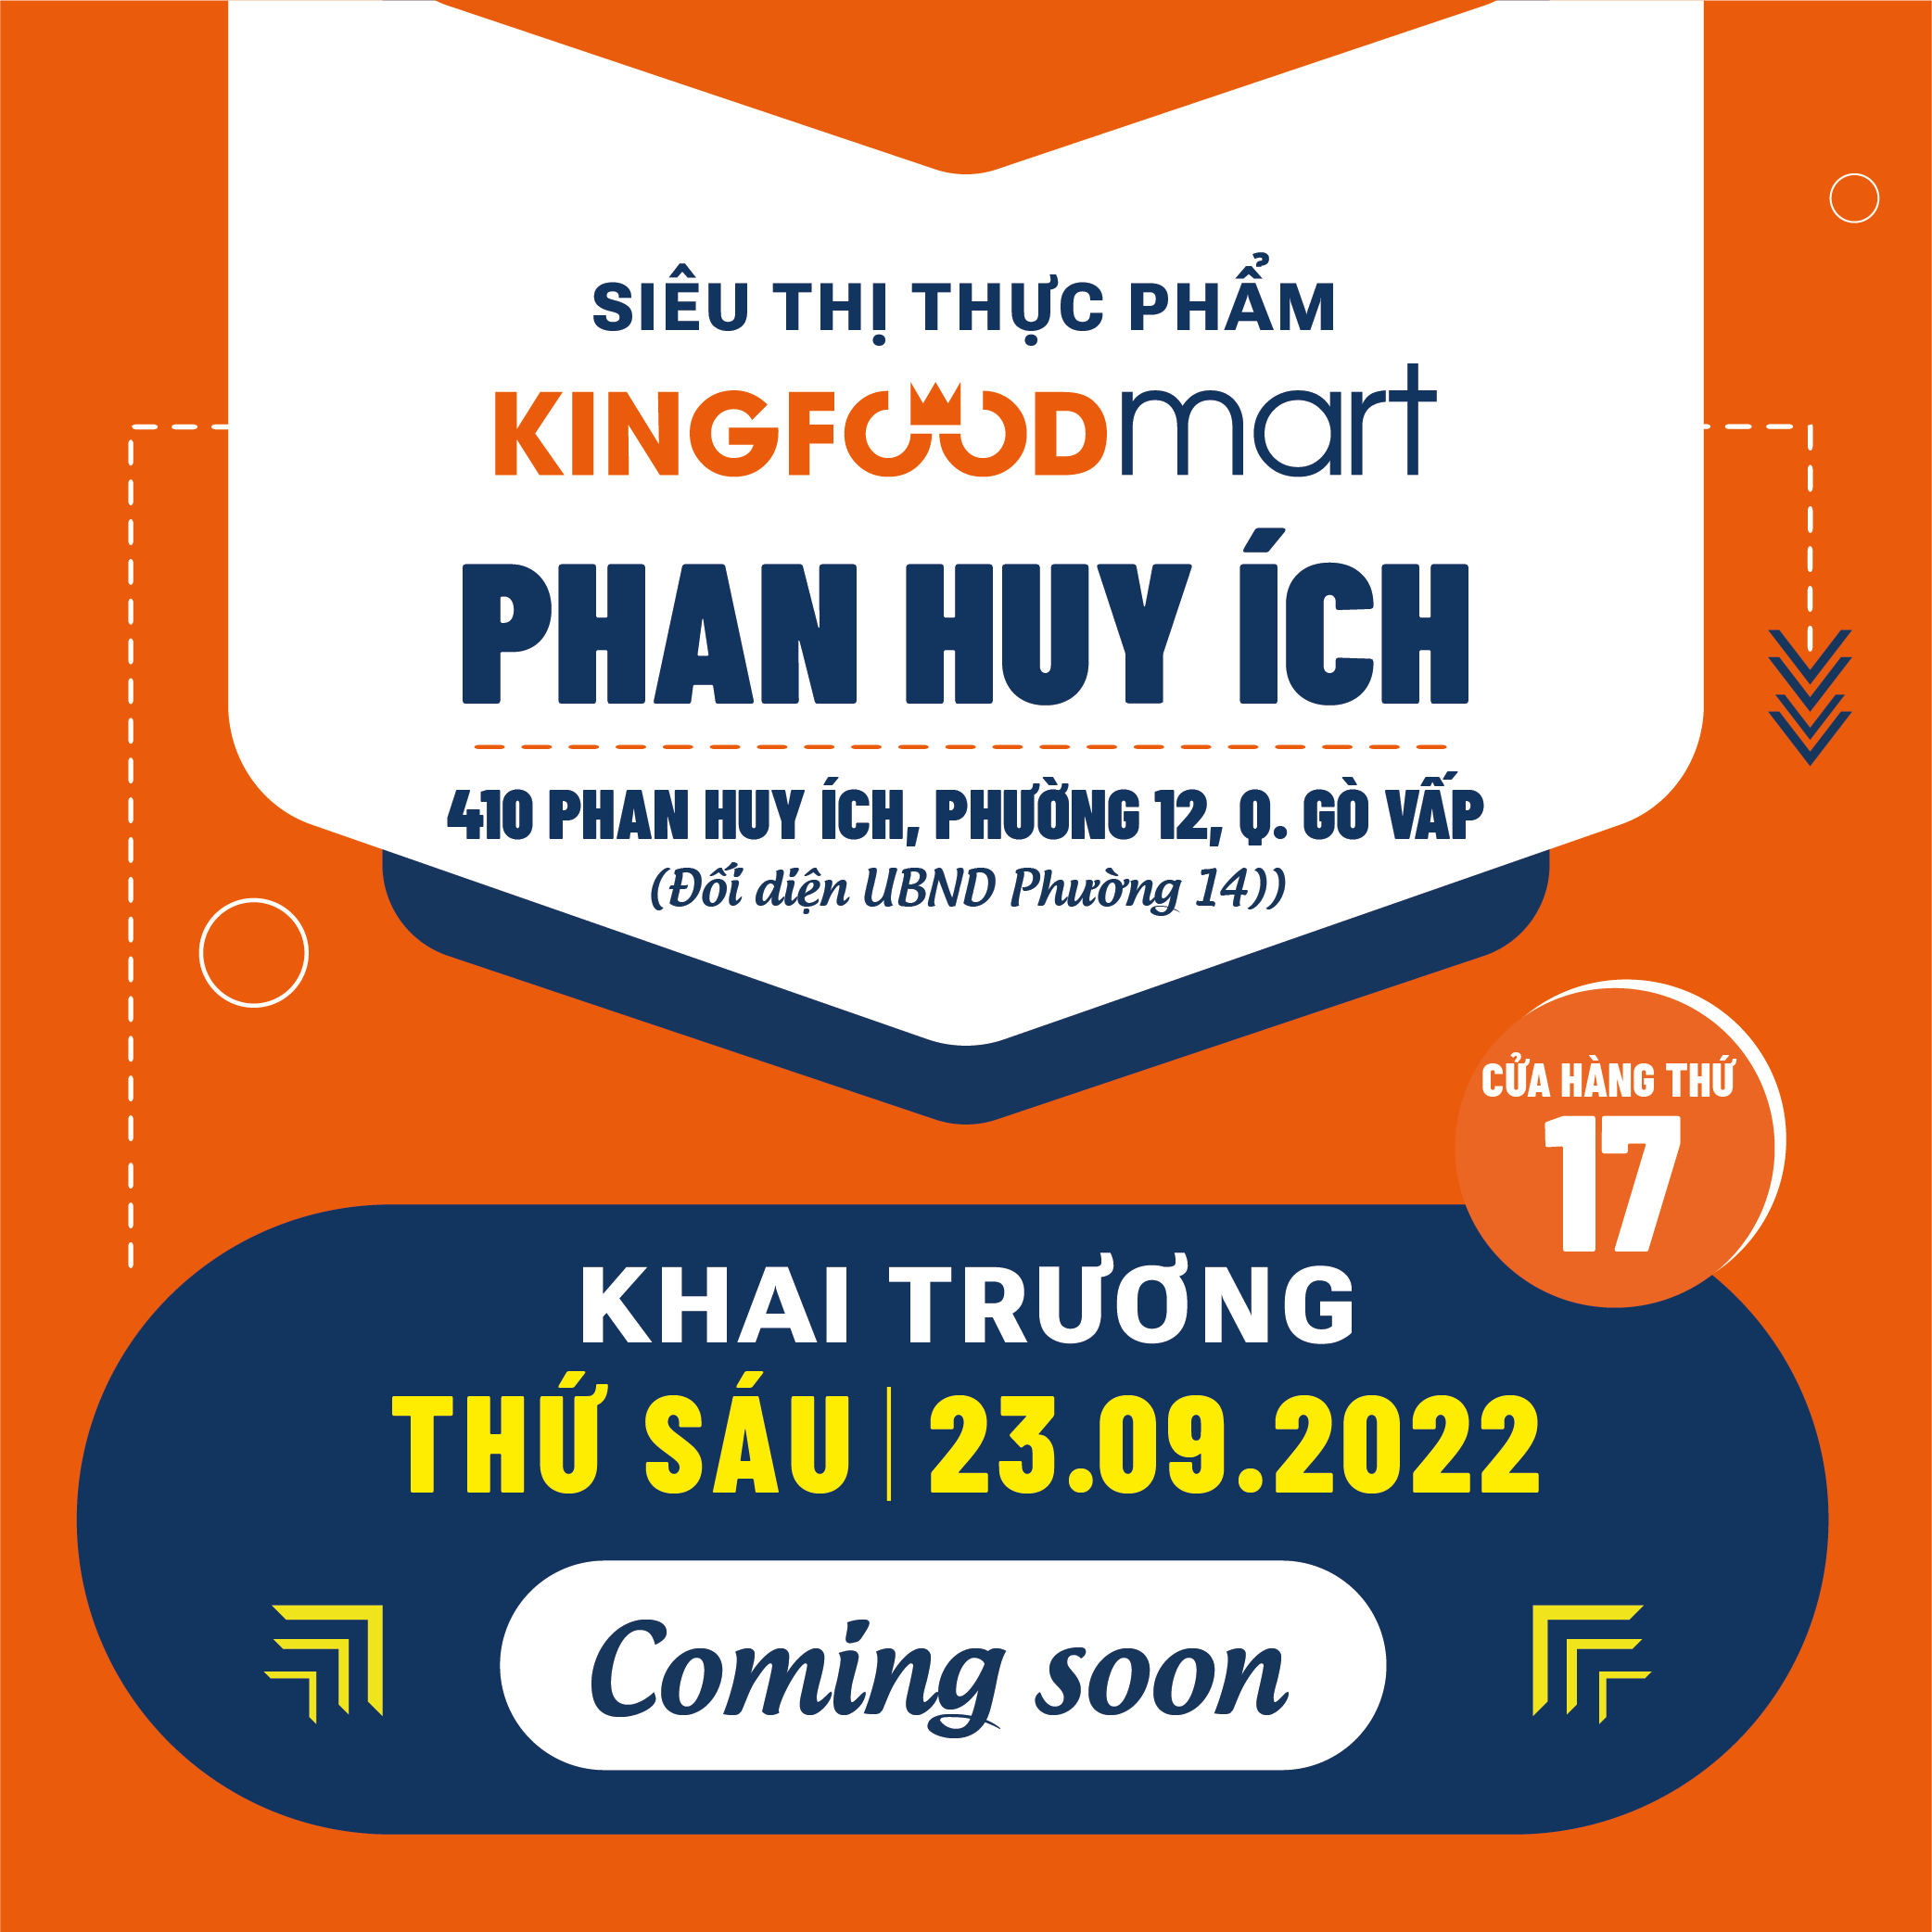 Ưu Đãi Tưng Bừng Mừng Khai Trương Kingfoodmart Phan Huy Ích